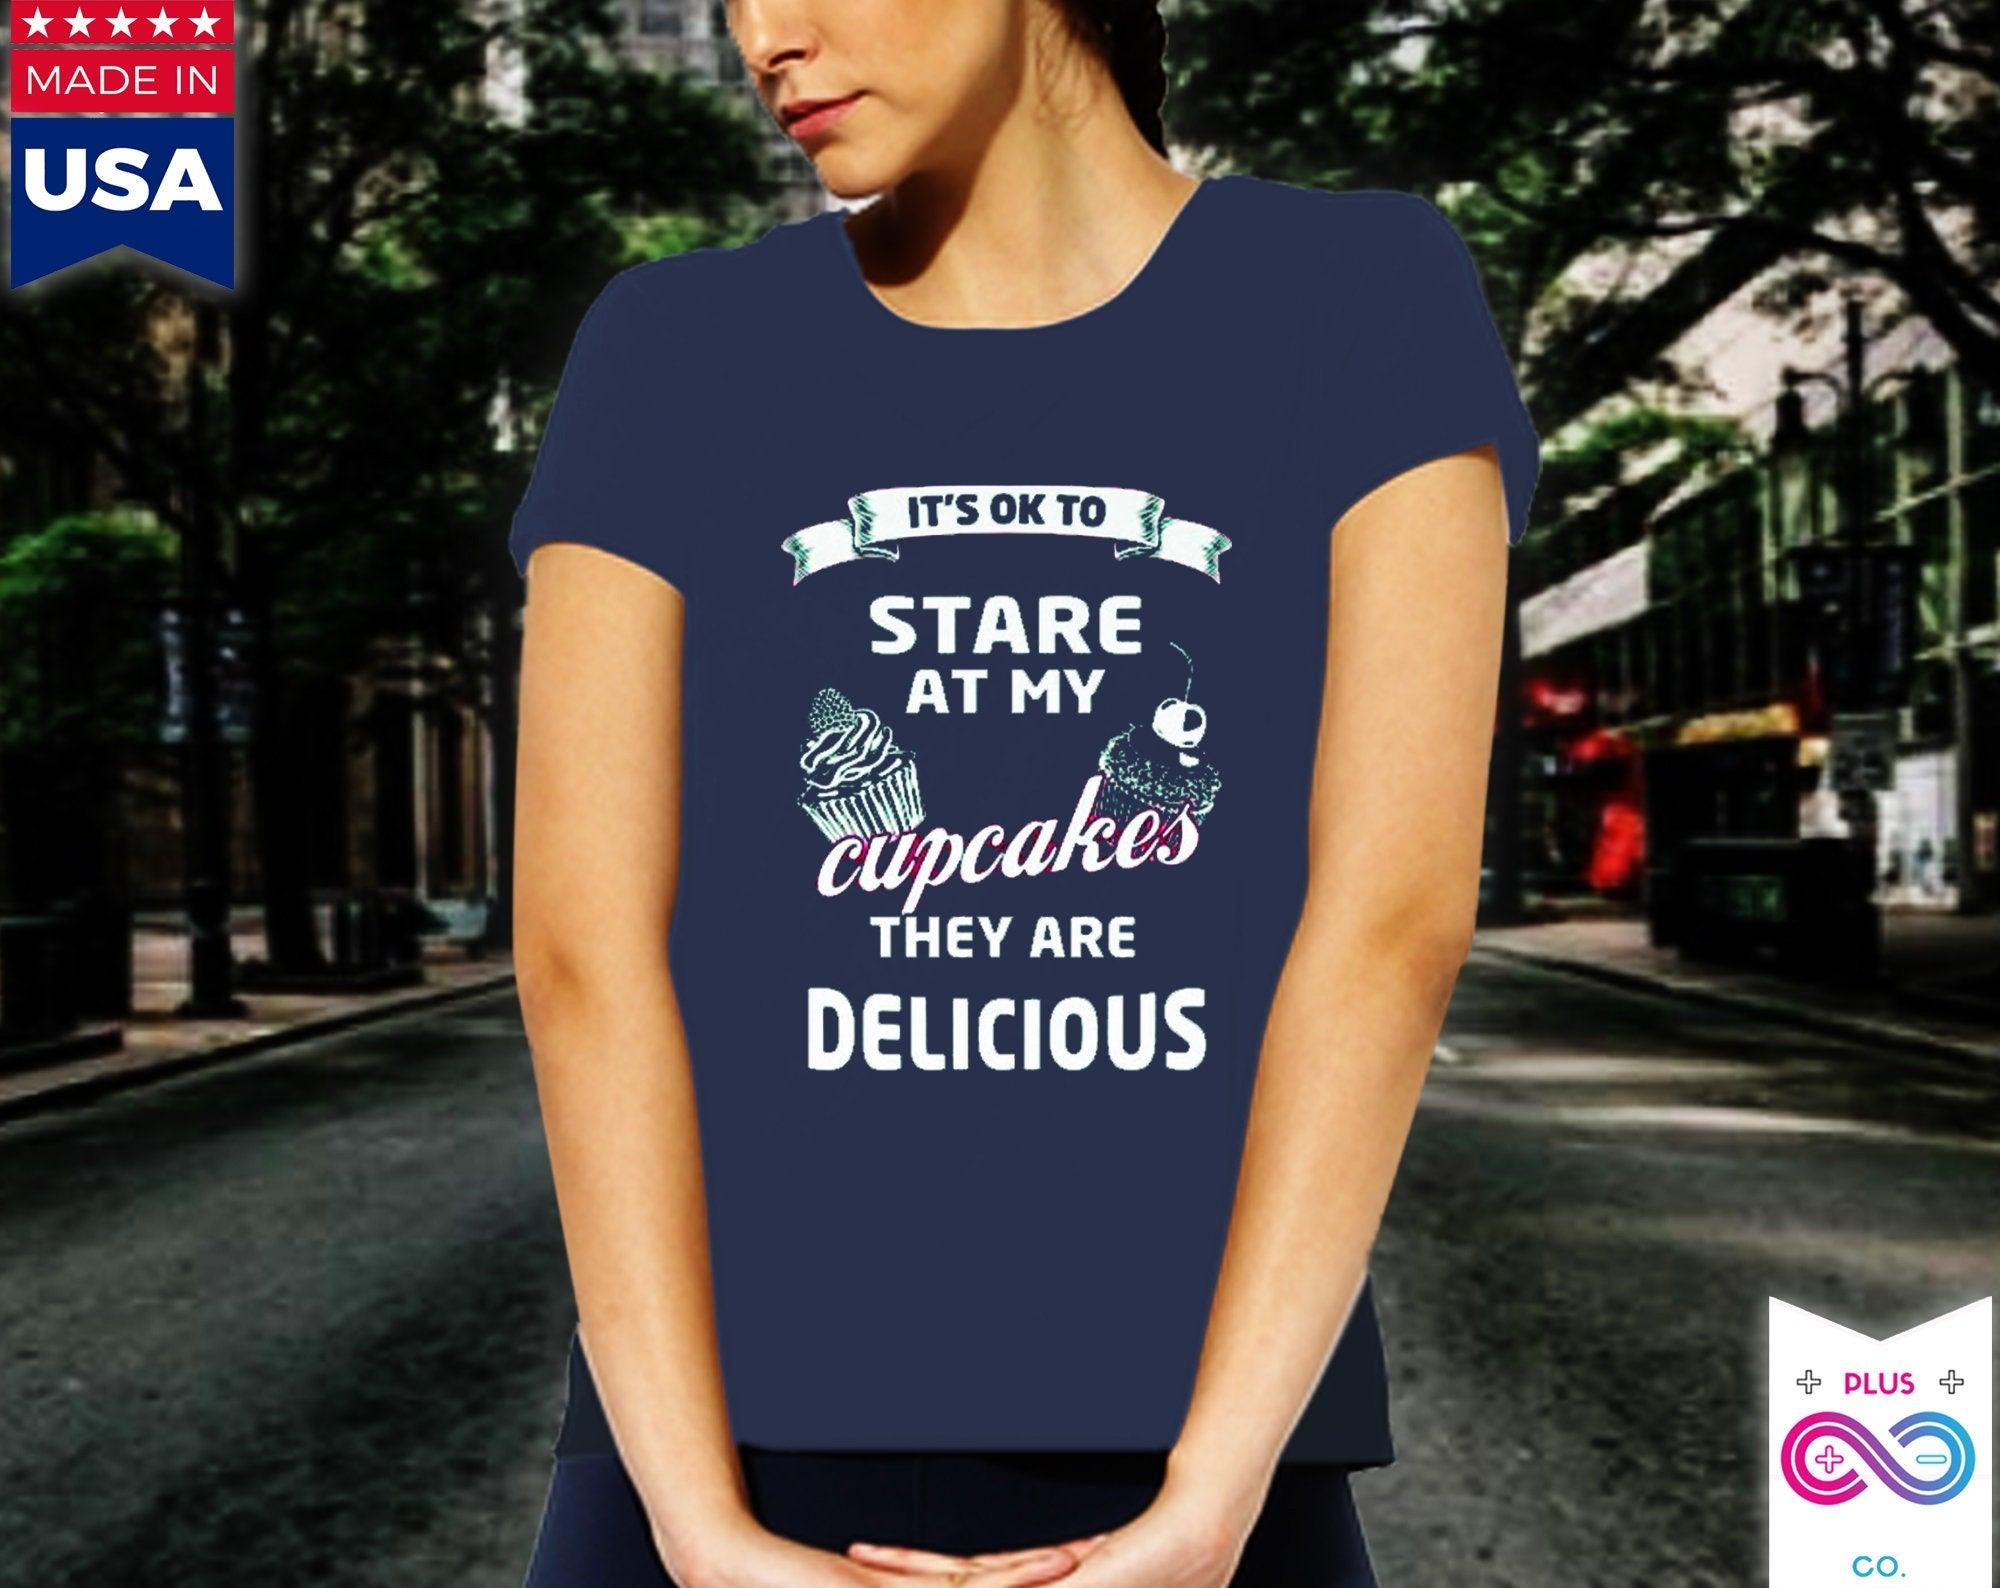 Está bien mirar mis pastelitos. Son deliciosos. La camiseta favorita de las mujeres, la camiseta humorística, la camiseta más vendida, el gran regalo divertido para ella - plusminusco.com